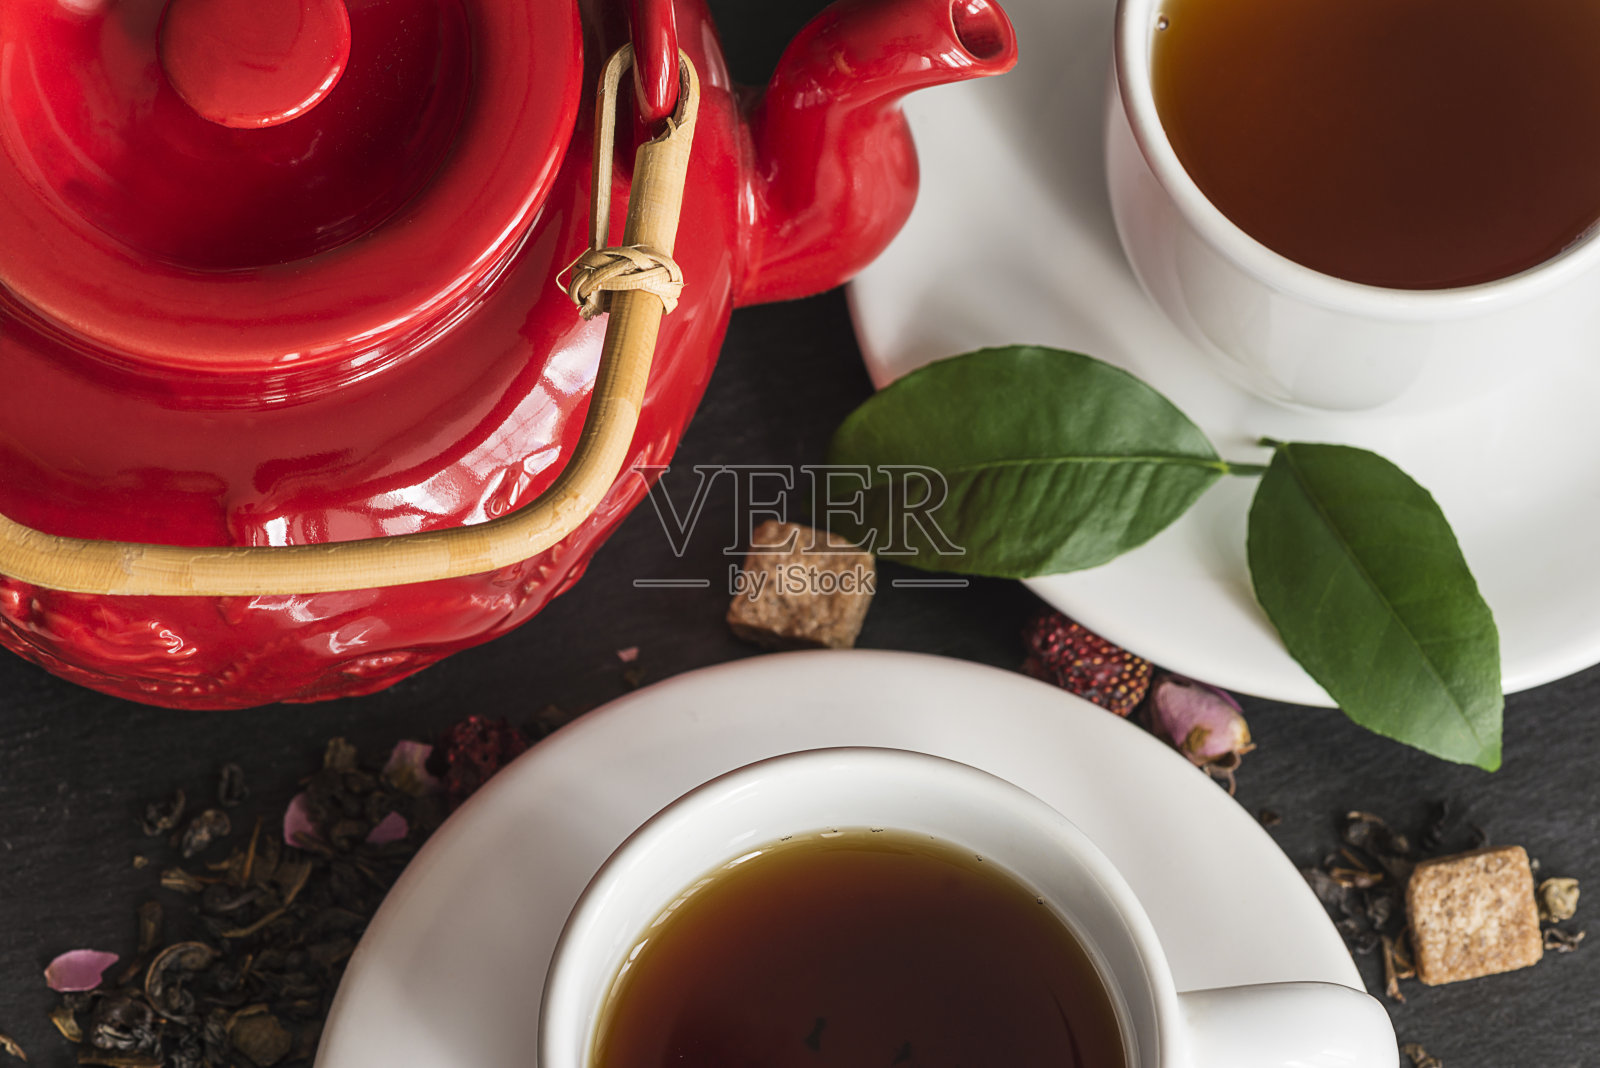 茶的概念照片摄影图片